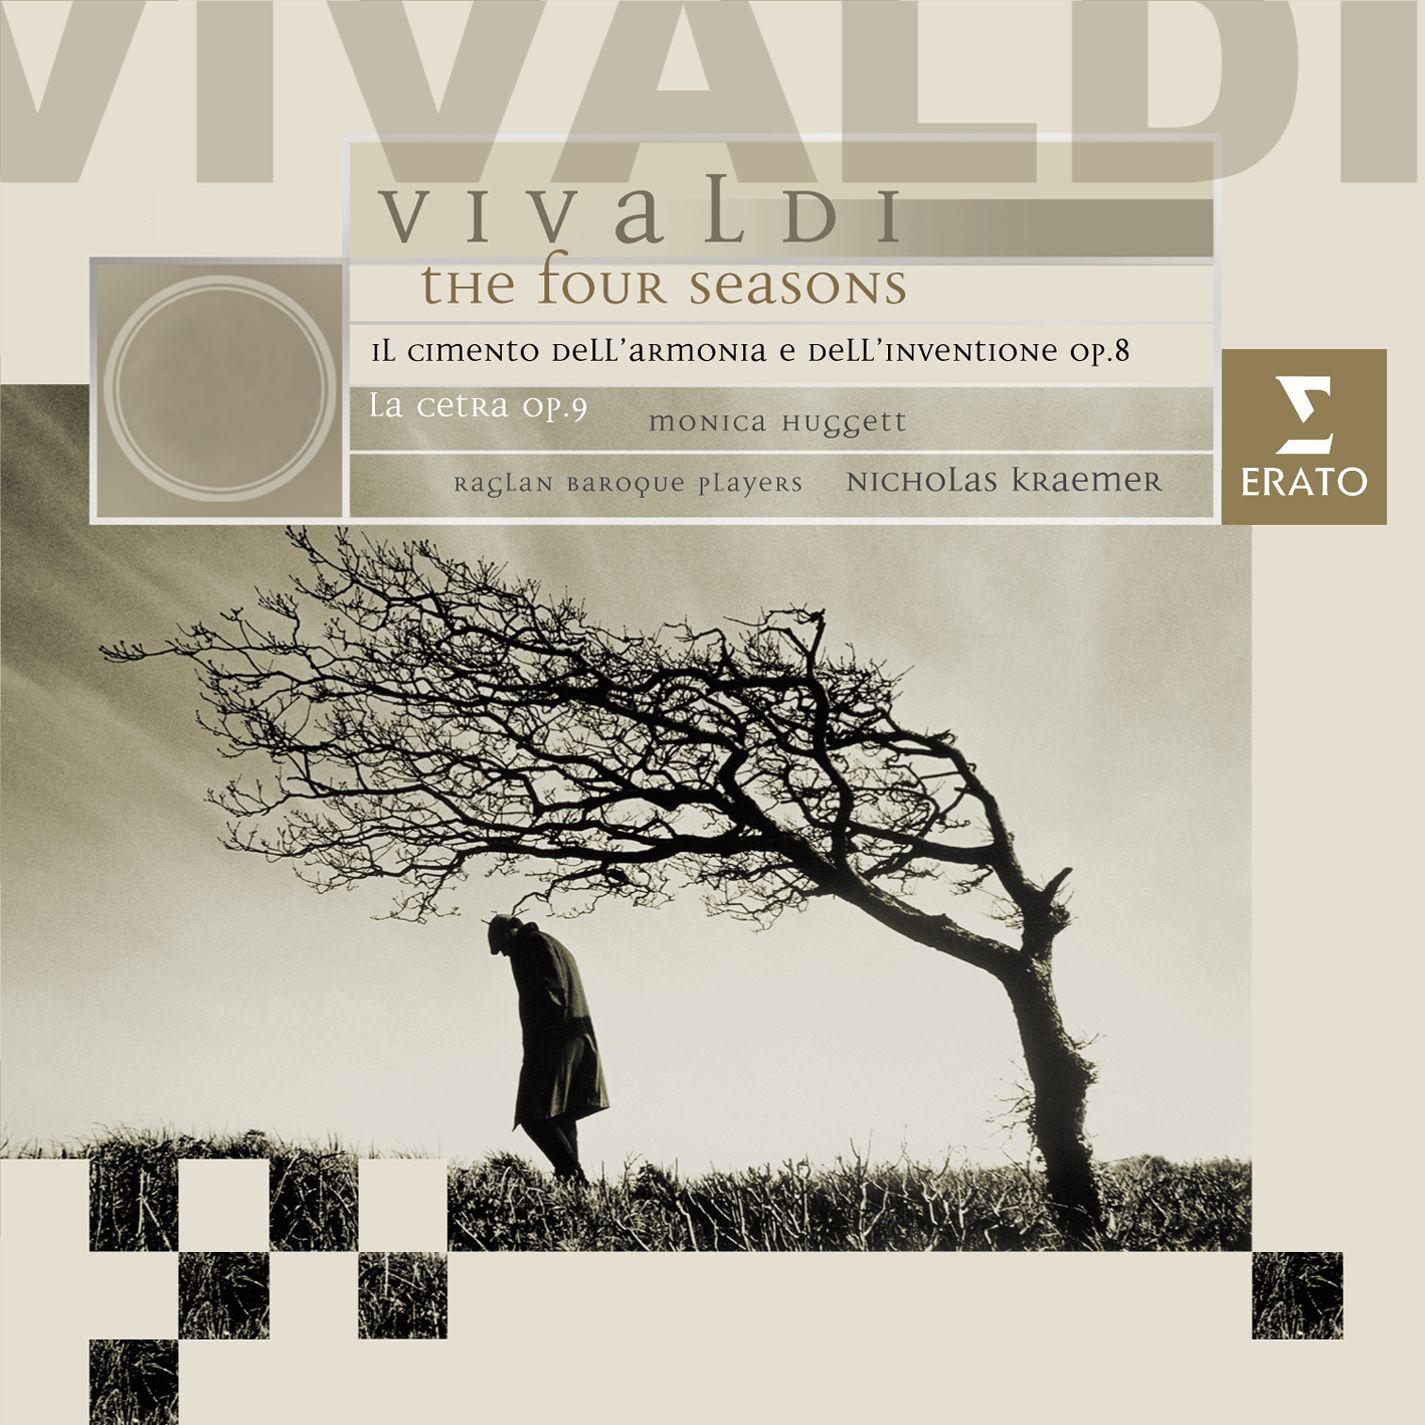 Violin Concerto in G Minor, RV 315, Op. 8, No. 2 "L'estate": III. Presto